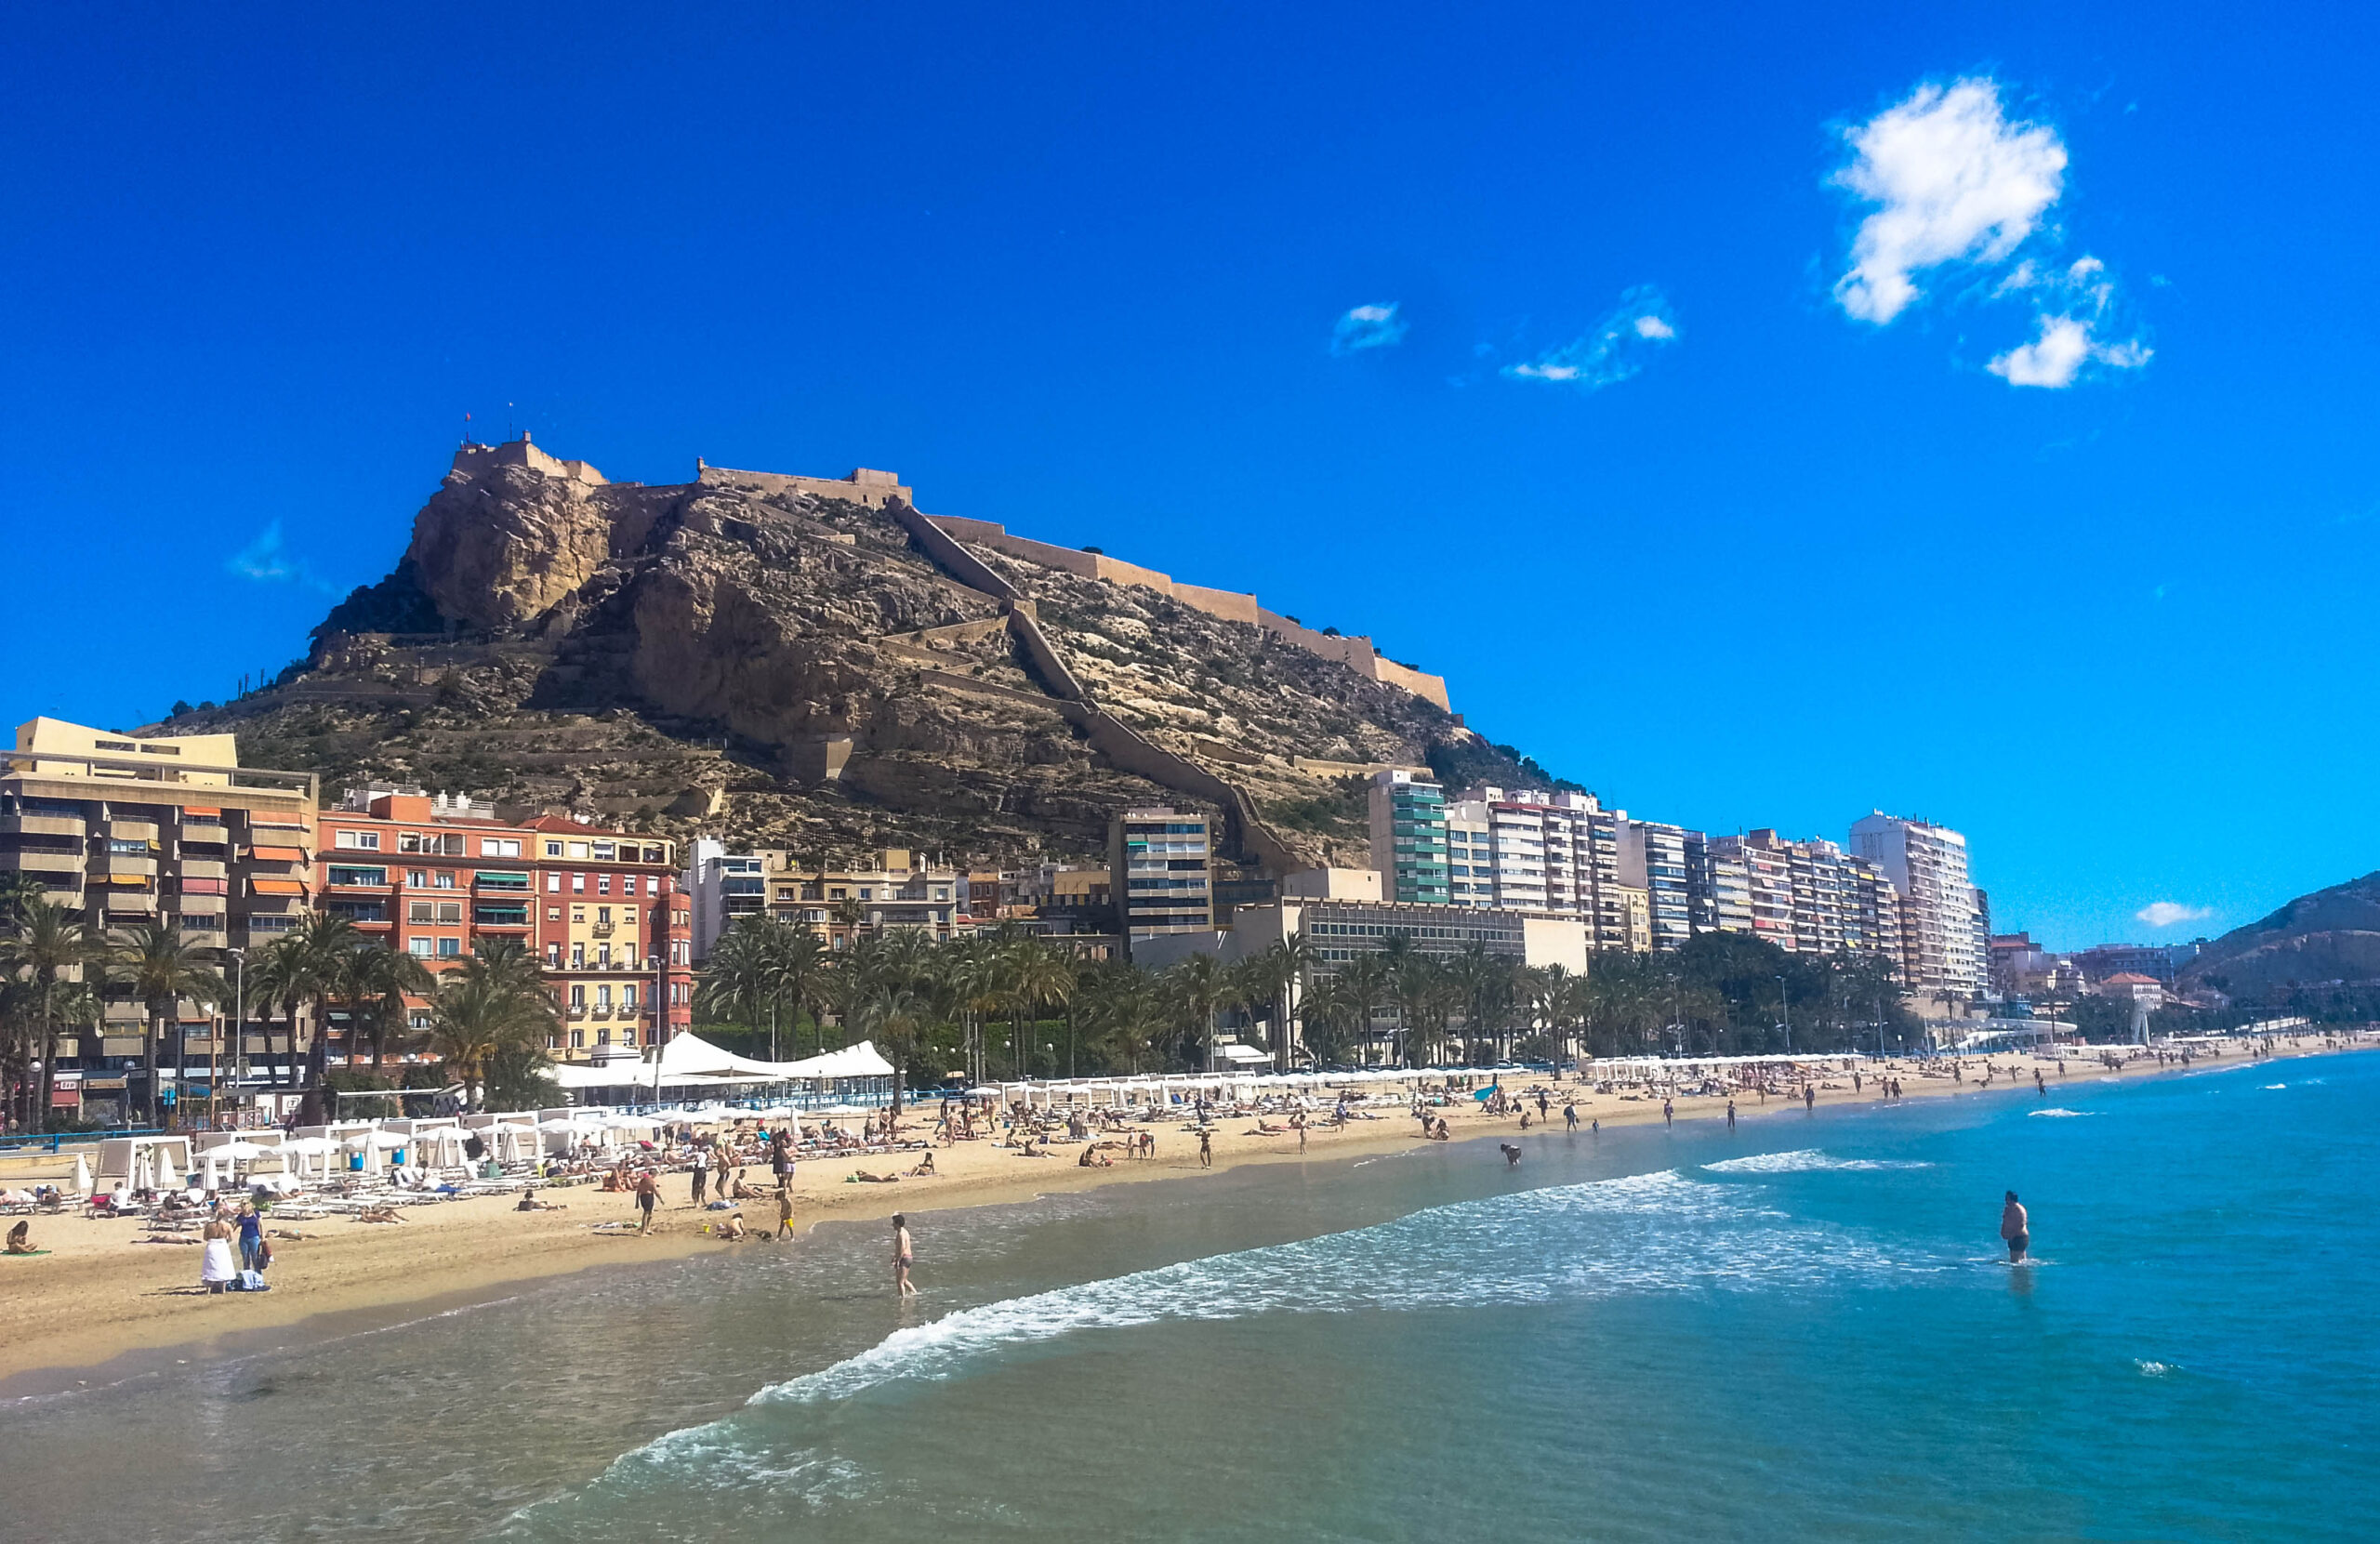 La Comunitat Valenciana ha propuesto al Ministerio de Sanidad la regulación del uso de la mascarilla en las playas